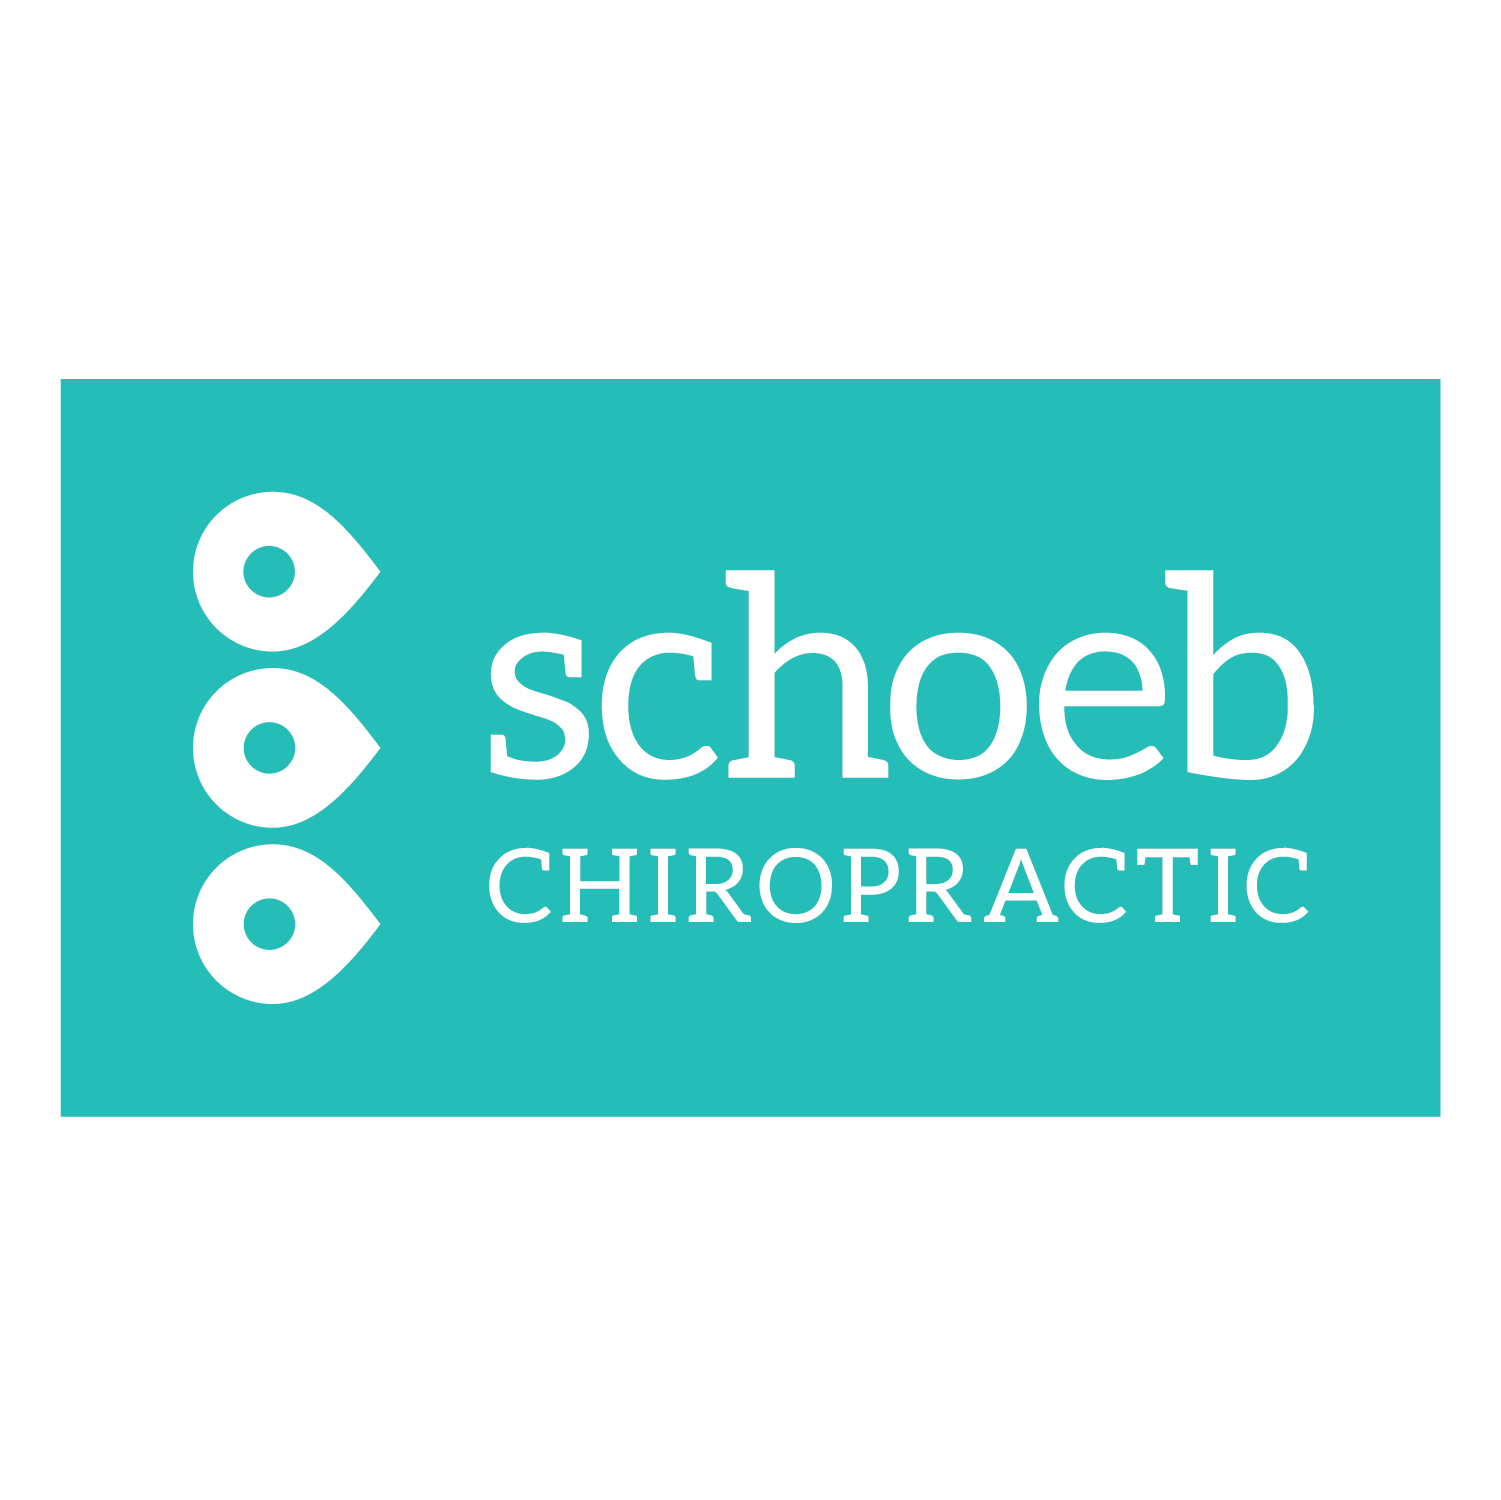 Schoeb Chiropractic